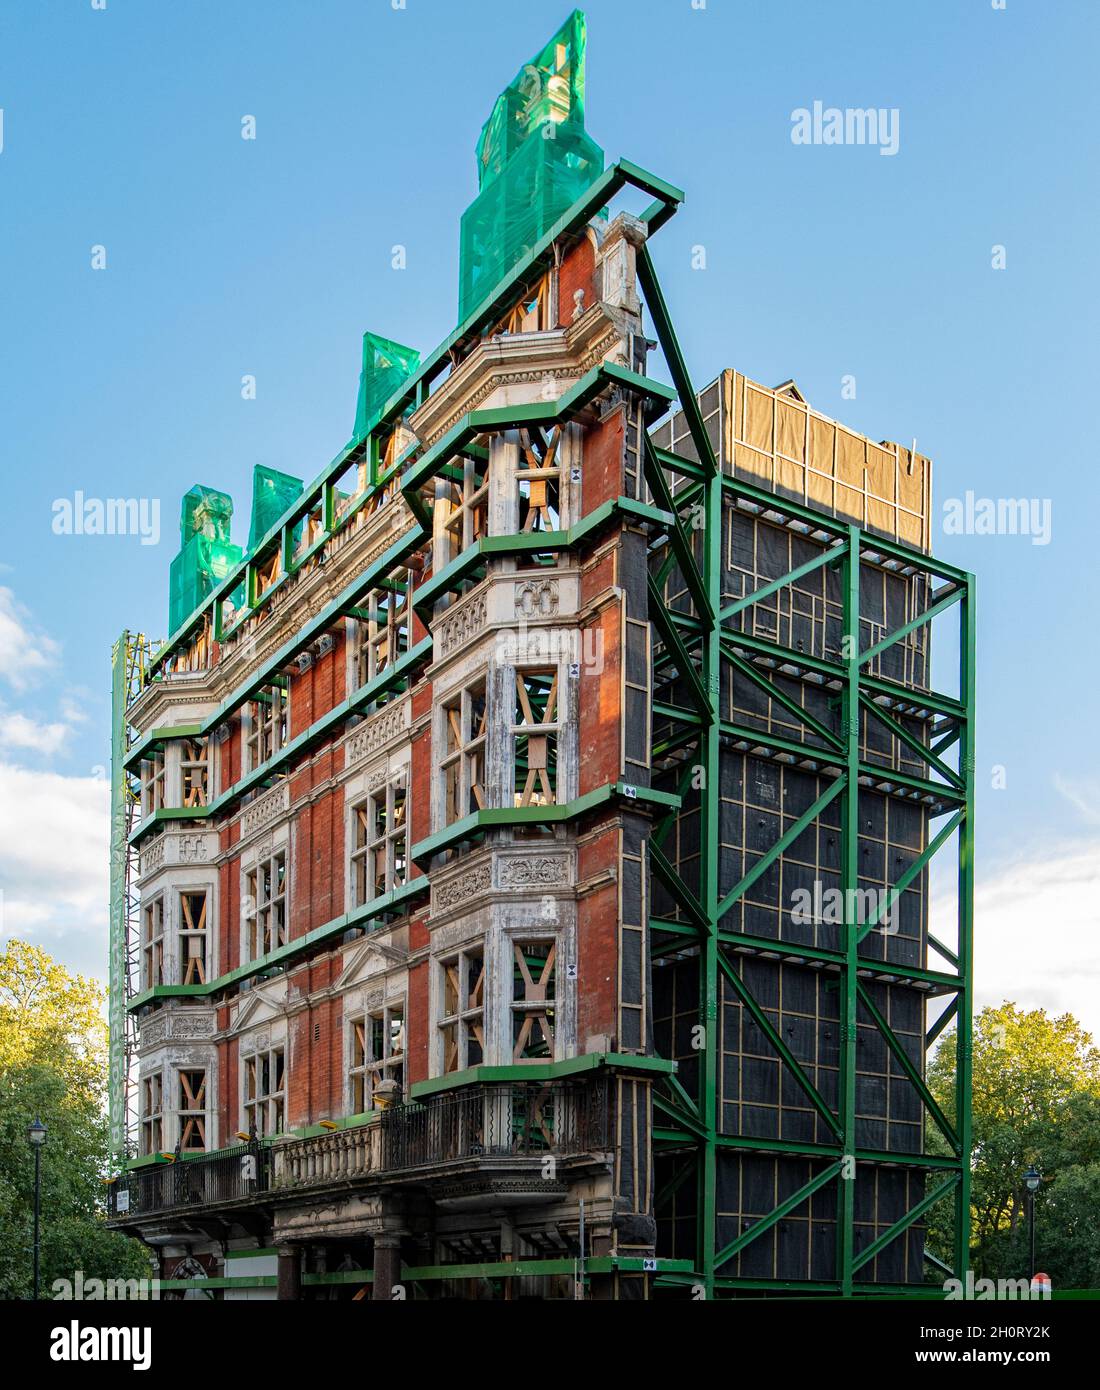 Die Fassade eines großen Gebäudes am Piccadilly in London wird gerade renoviert; die Fassade ist erhalten und hinter ihr erscheint eine moderne Konstruktion. Stockfoto